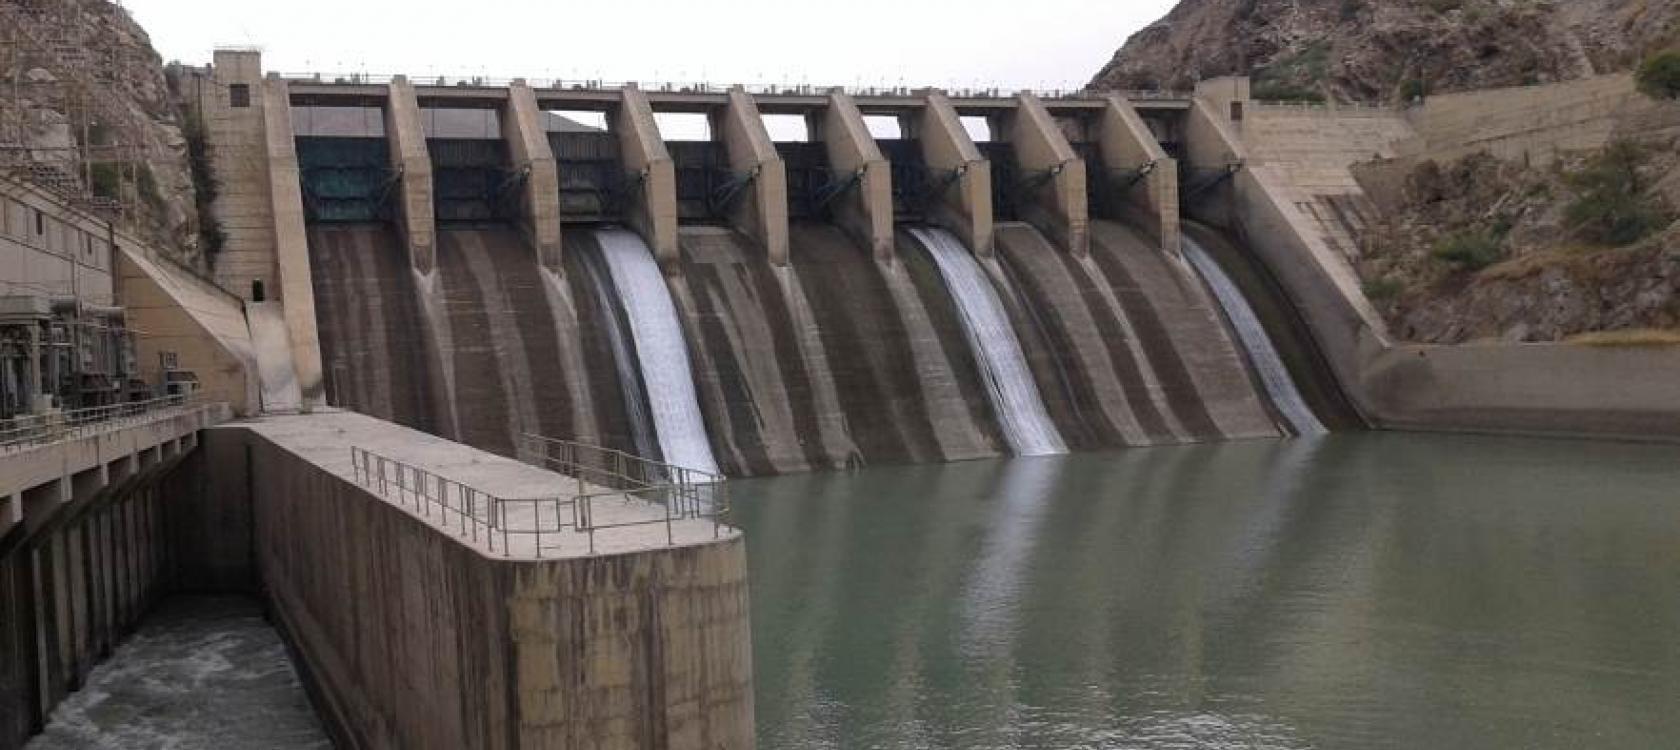 Spill ways, Warsak Dam, Peshawar, KPK